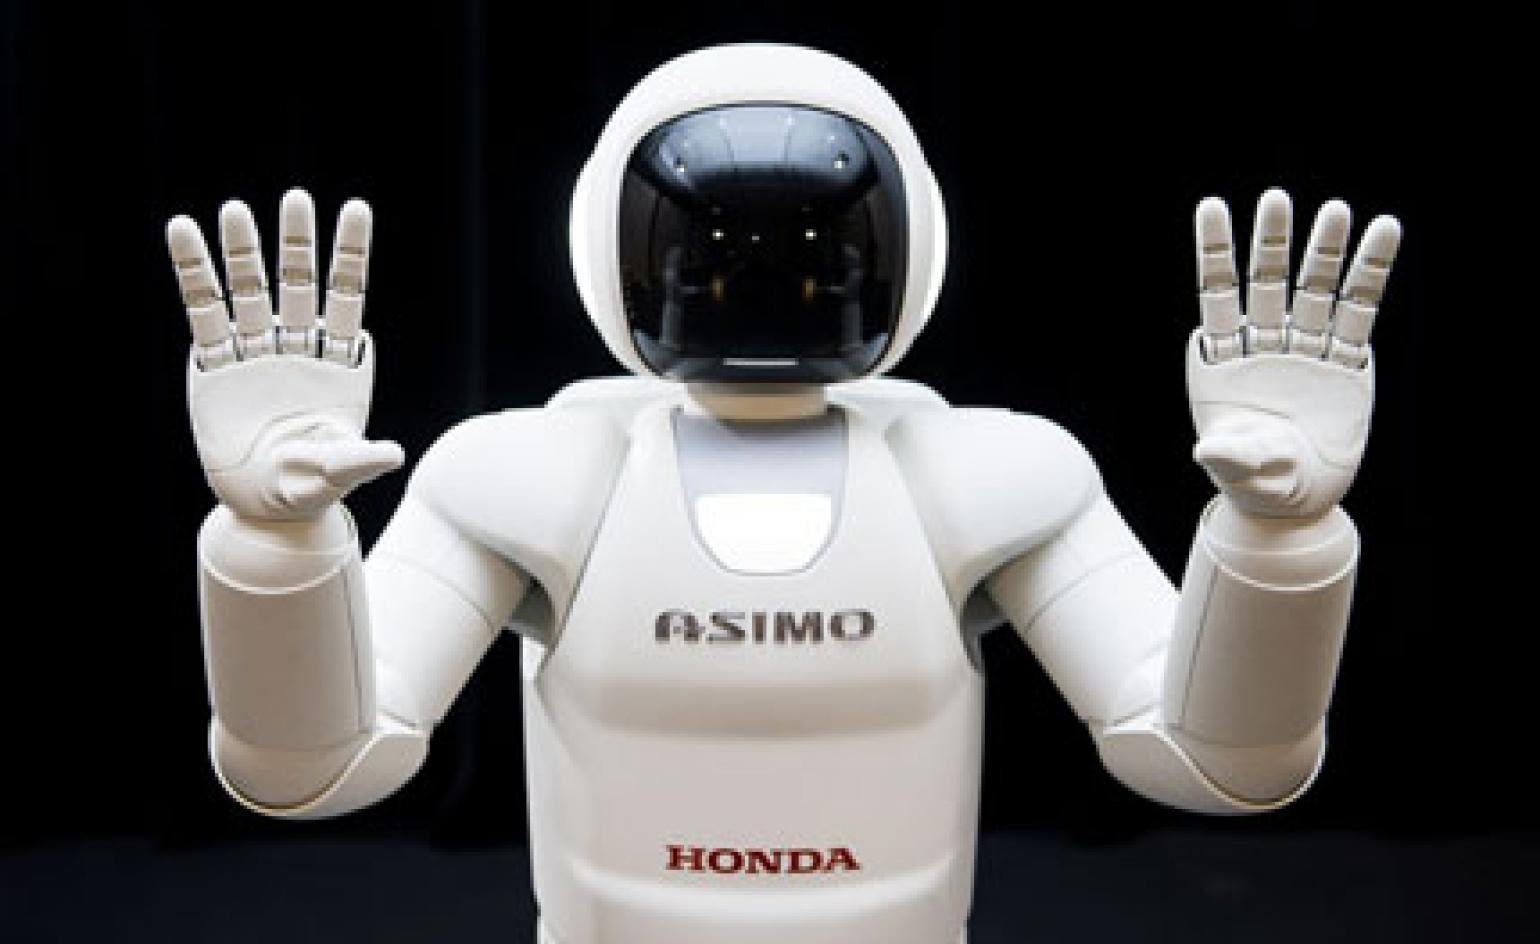 Next generation: as Honda's Asimo robot grows up, we quiz